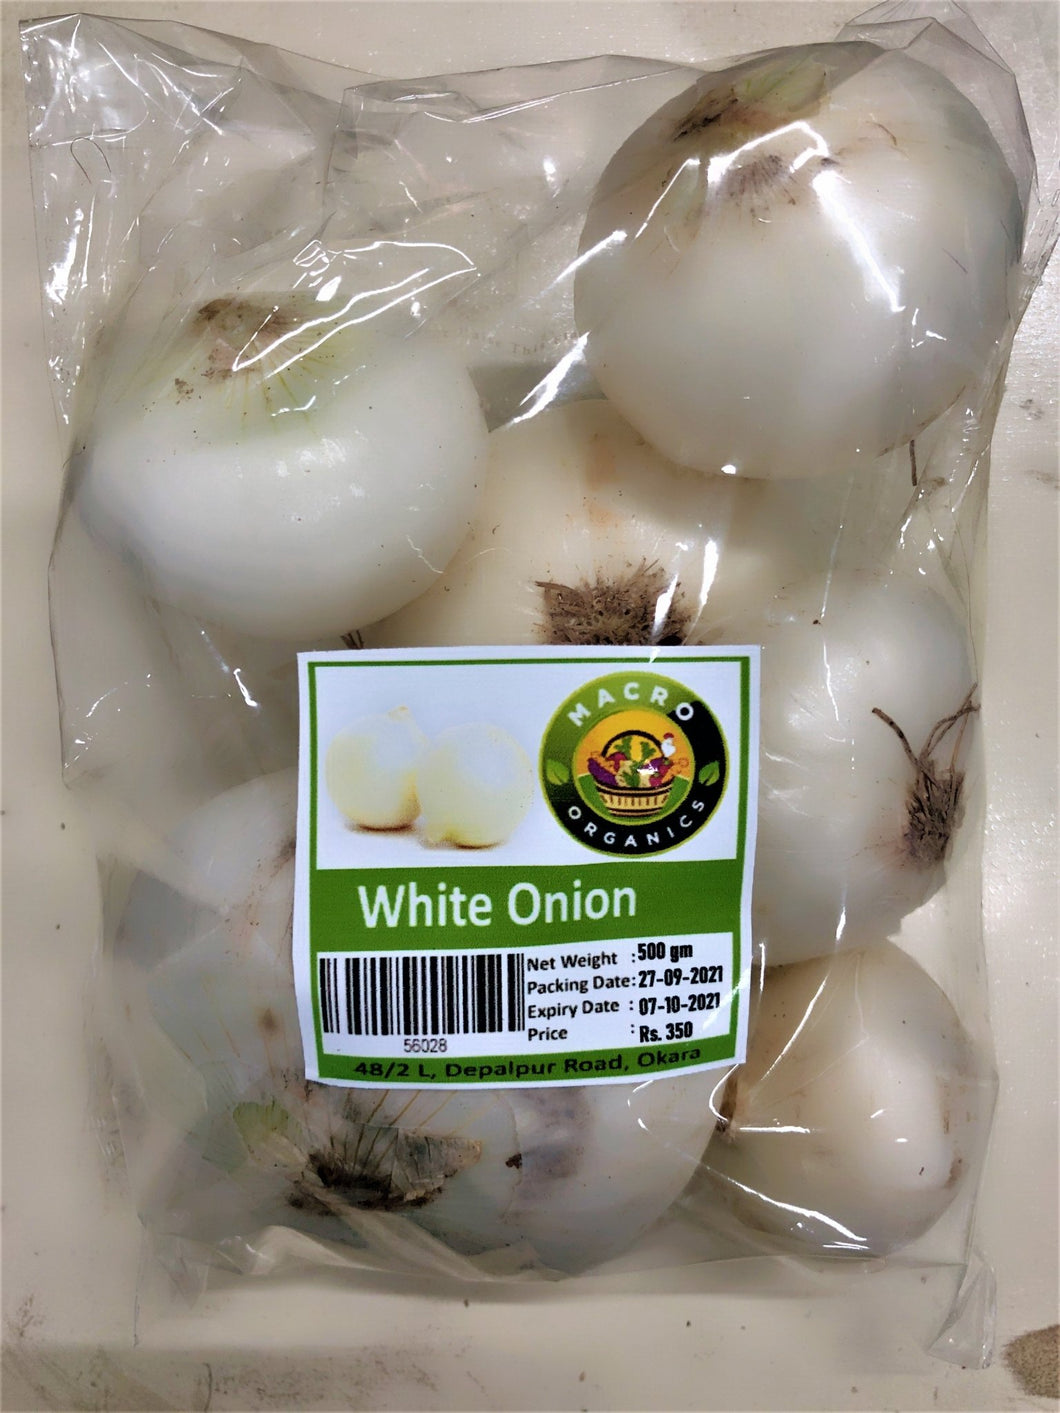 Macro Organic White Onion 500g - TAYYIB - Macro Organics - Lahore